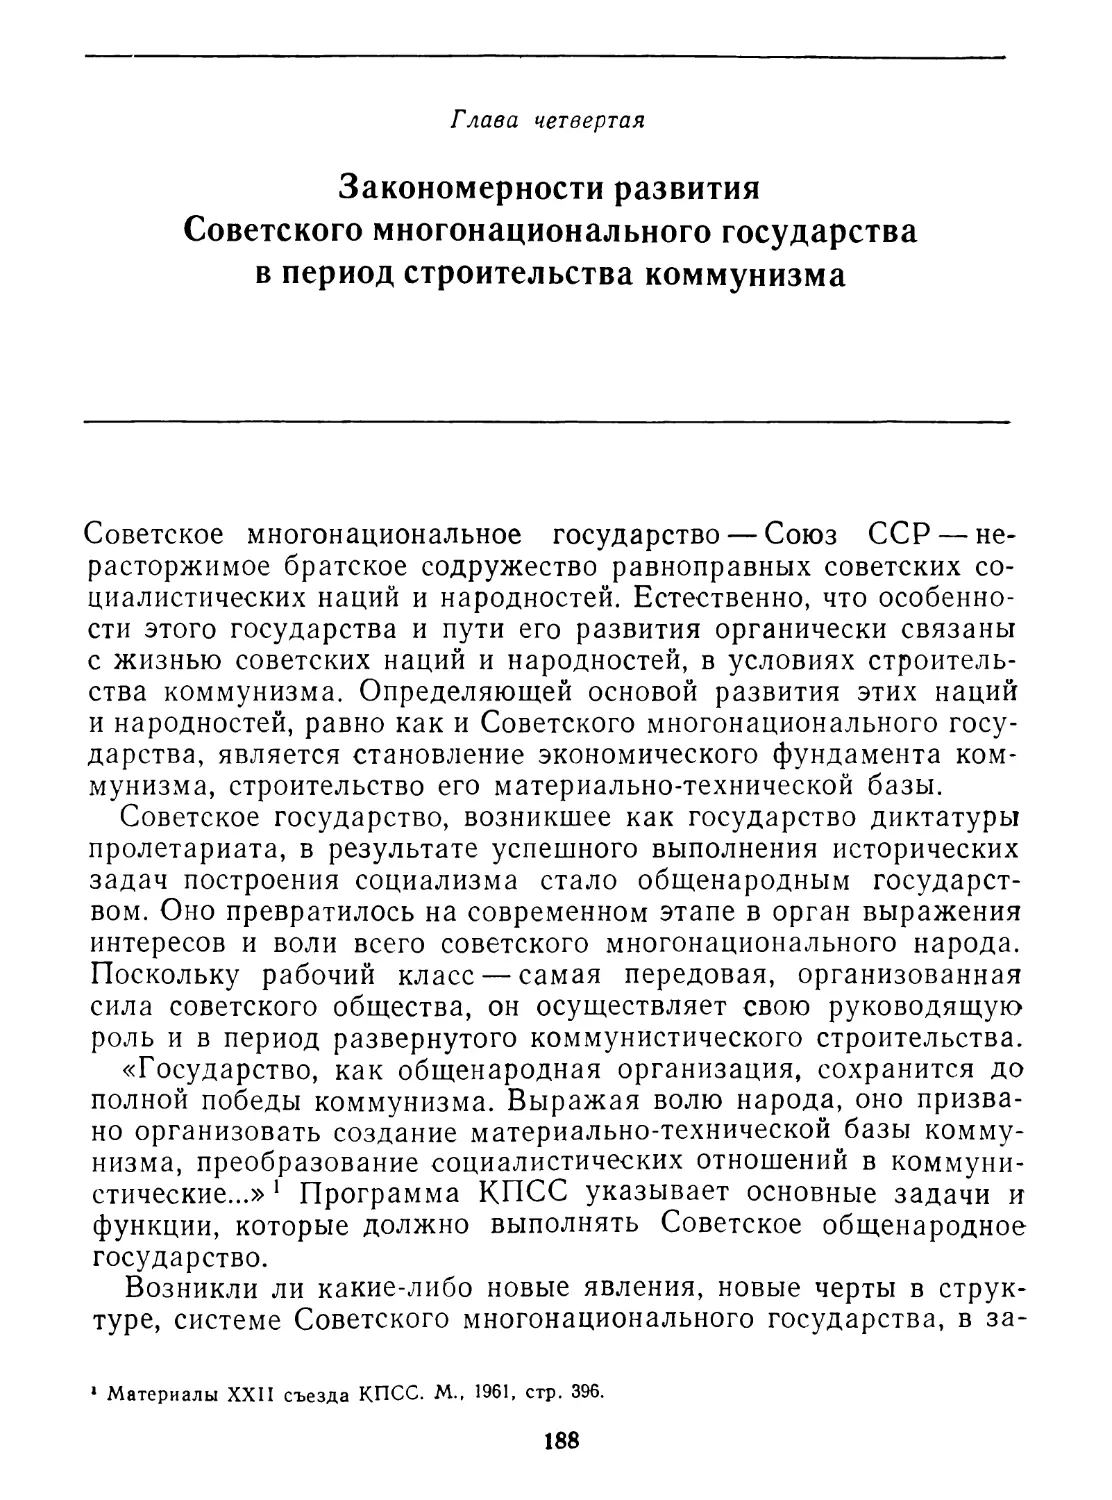 Глава четвертая. Закономерности развития Советского многонационального государства в период строительства коммунизма